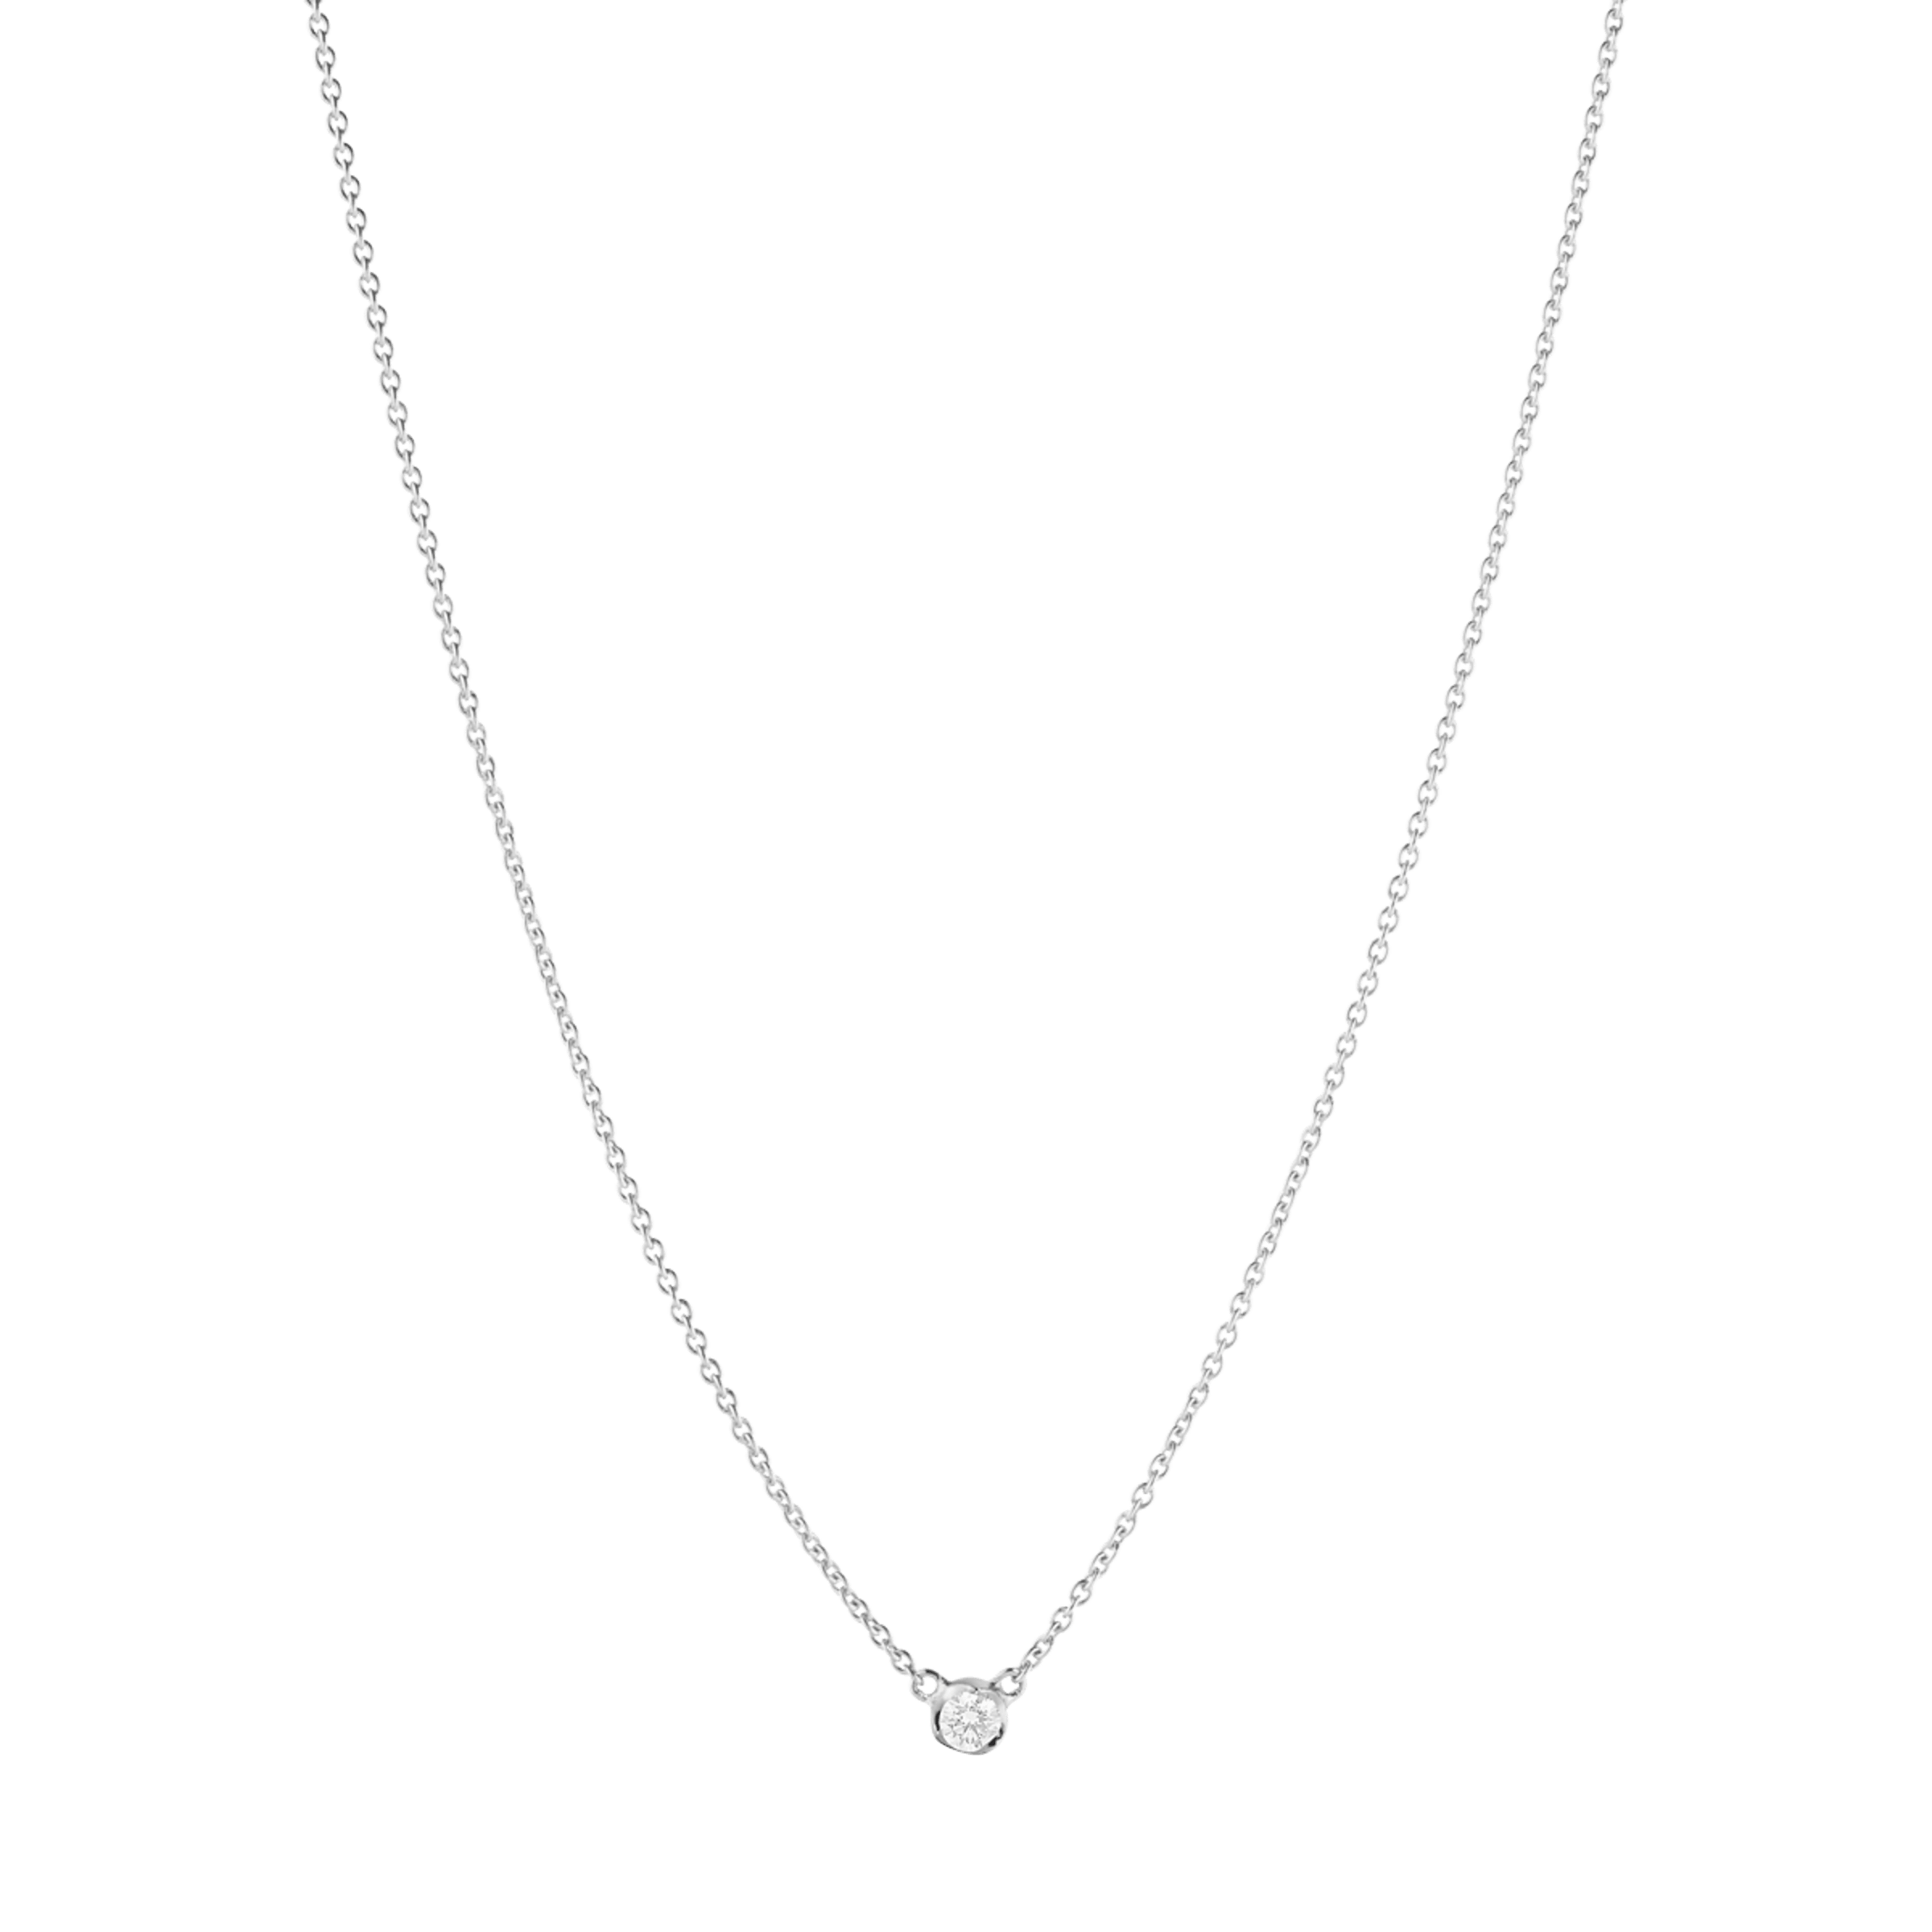 Signature Diamonds halskæde fra Georg Jensen